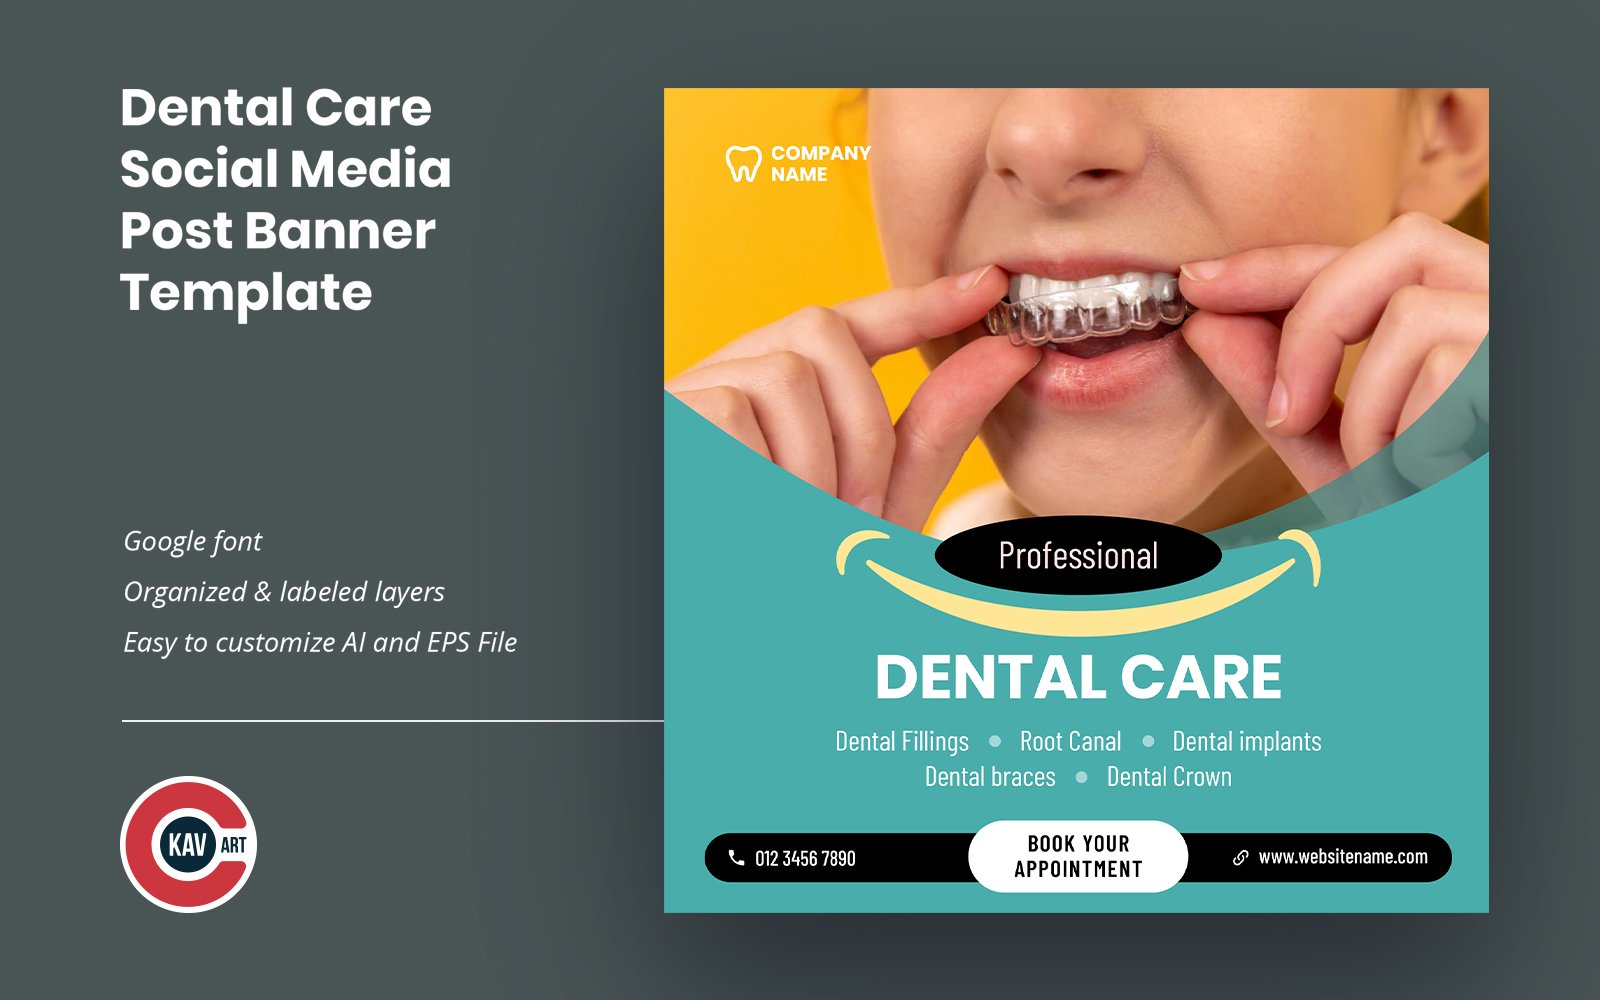 Dental Care Social Media Post Banner Template